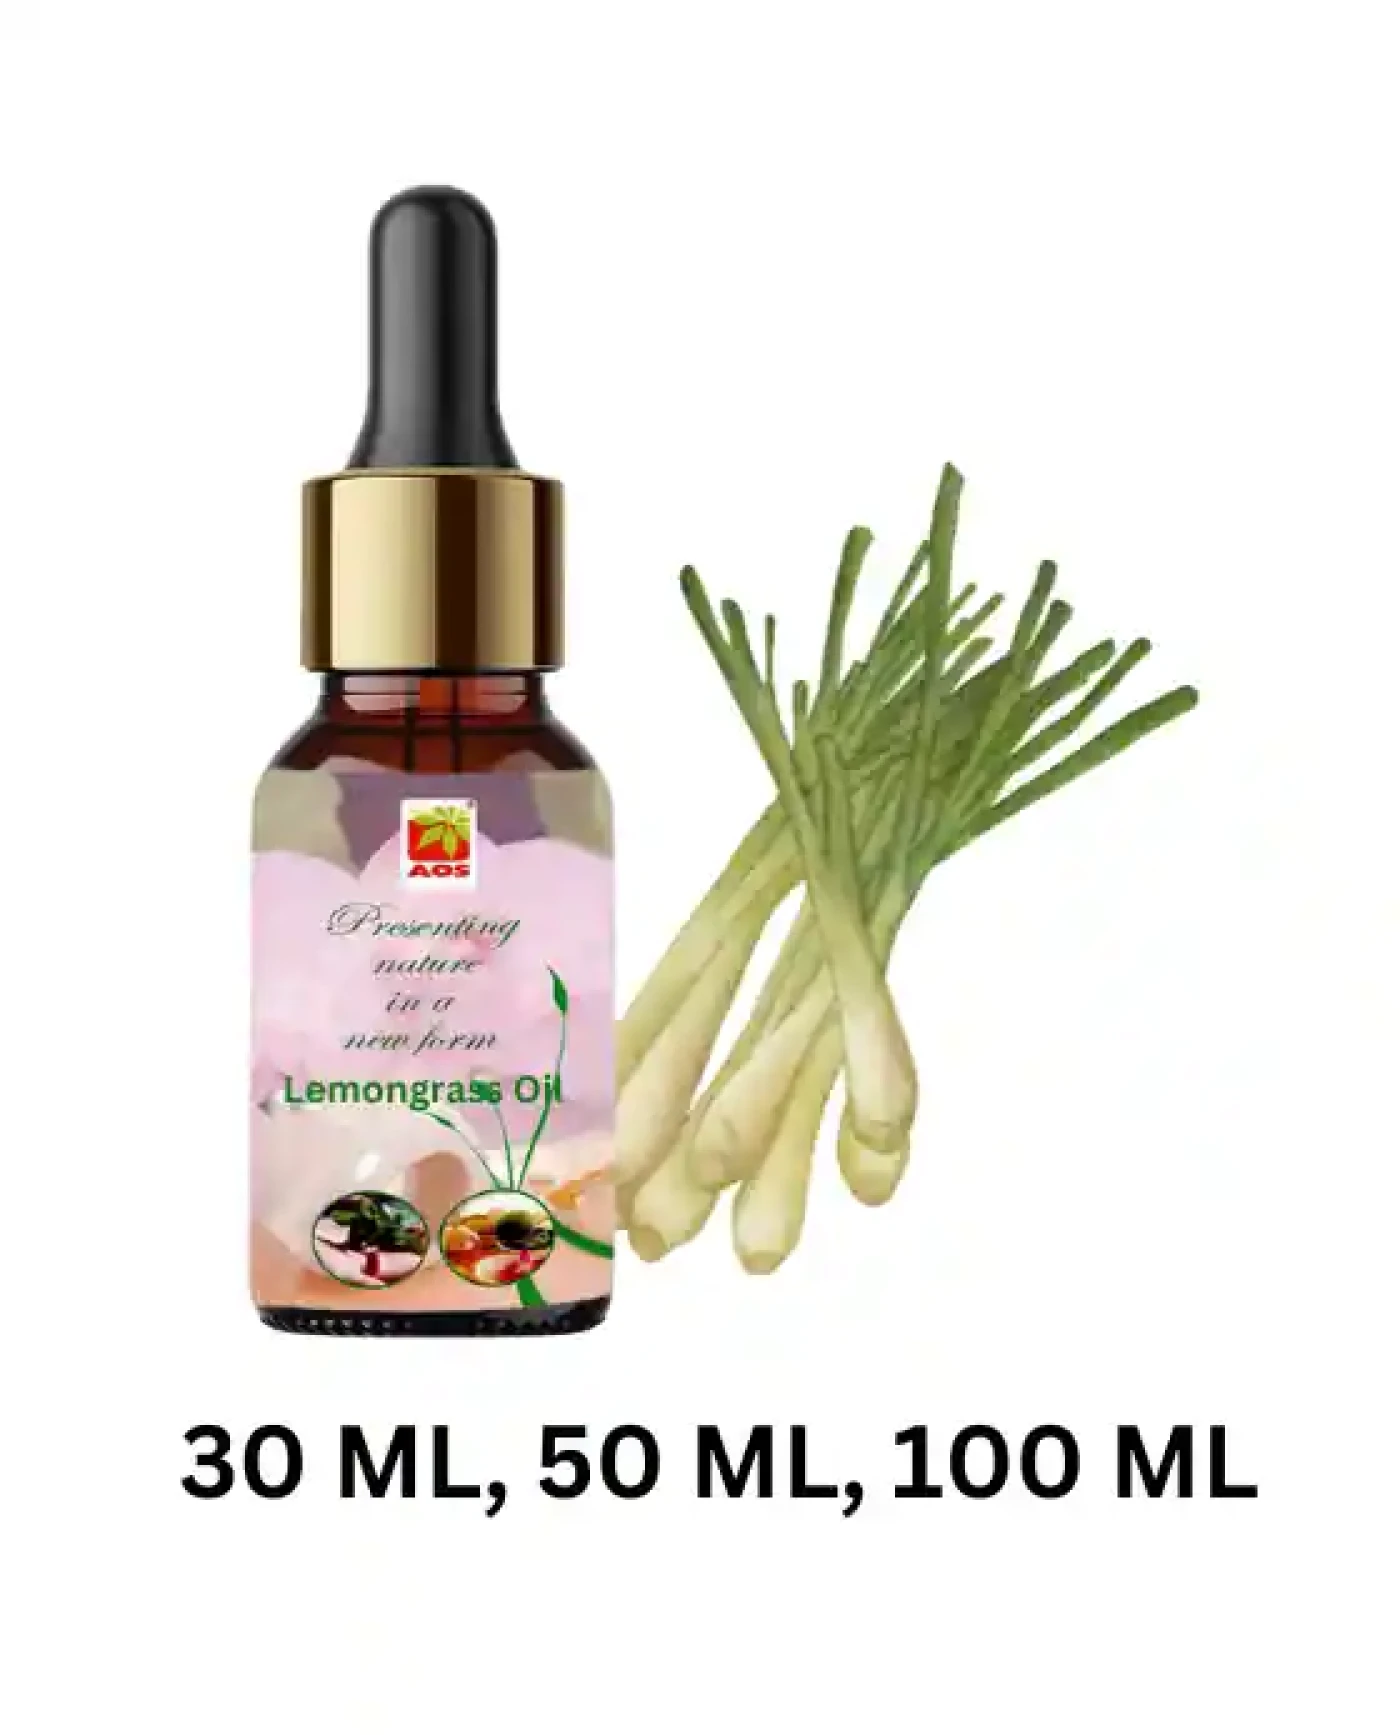 Buy Lemongrass Oil Online